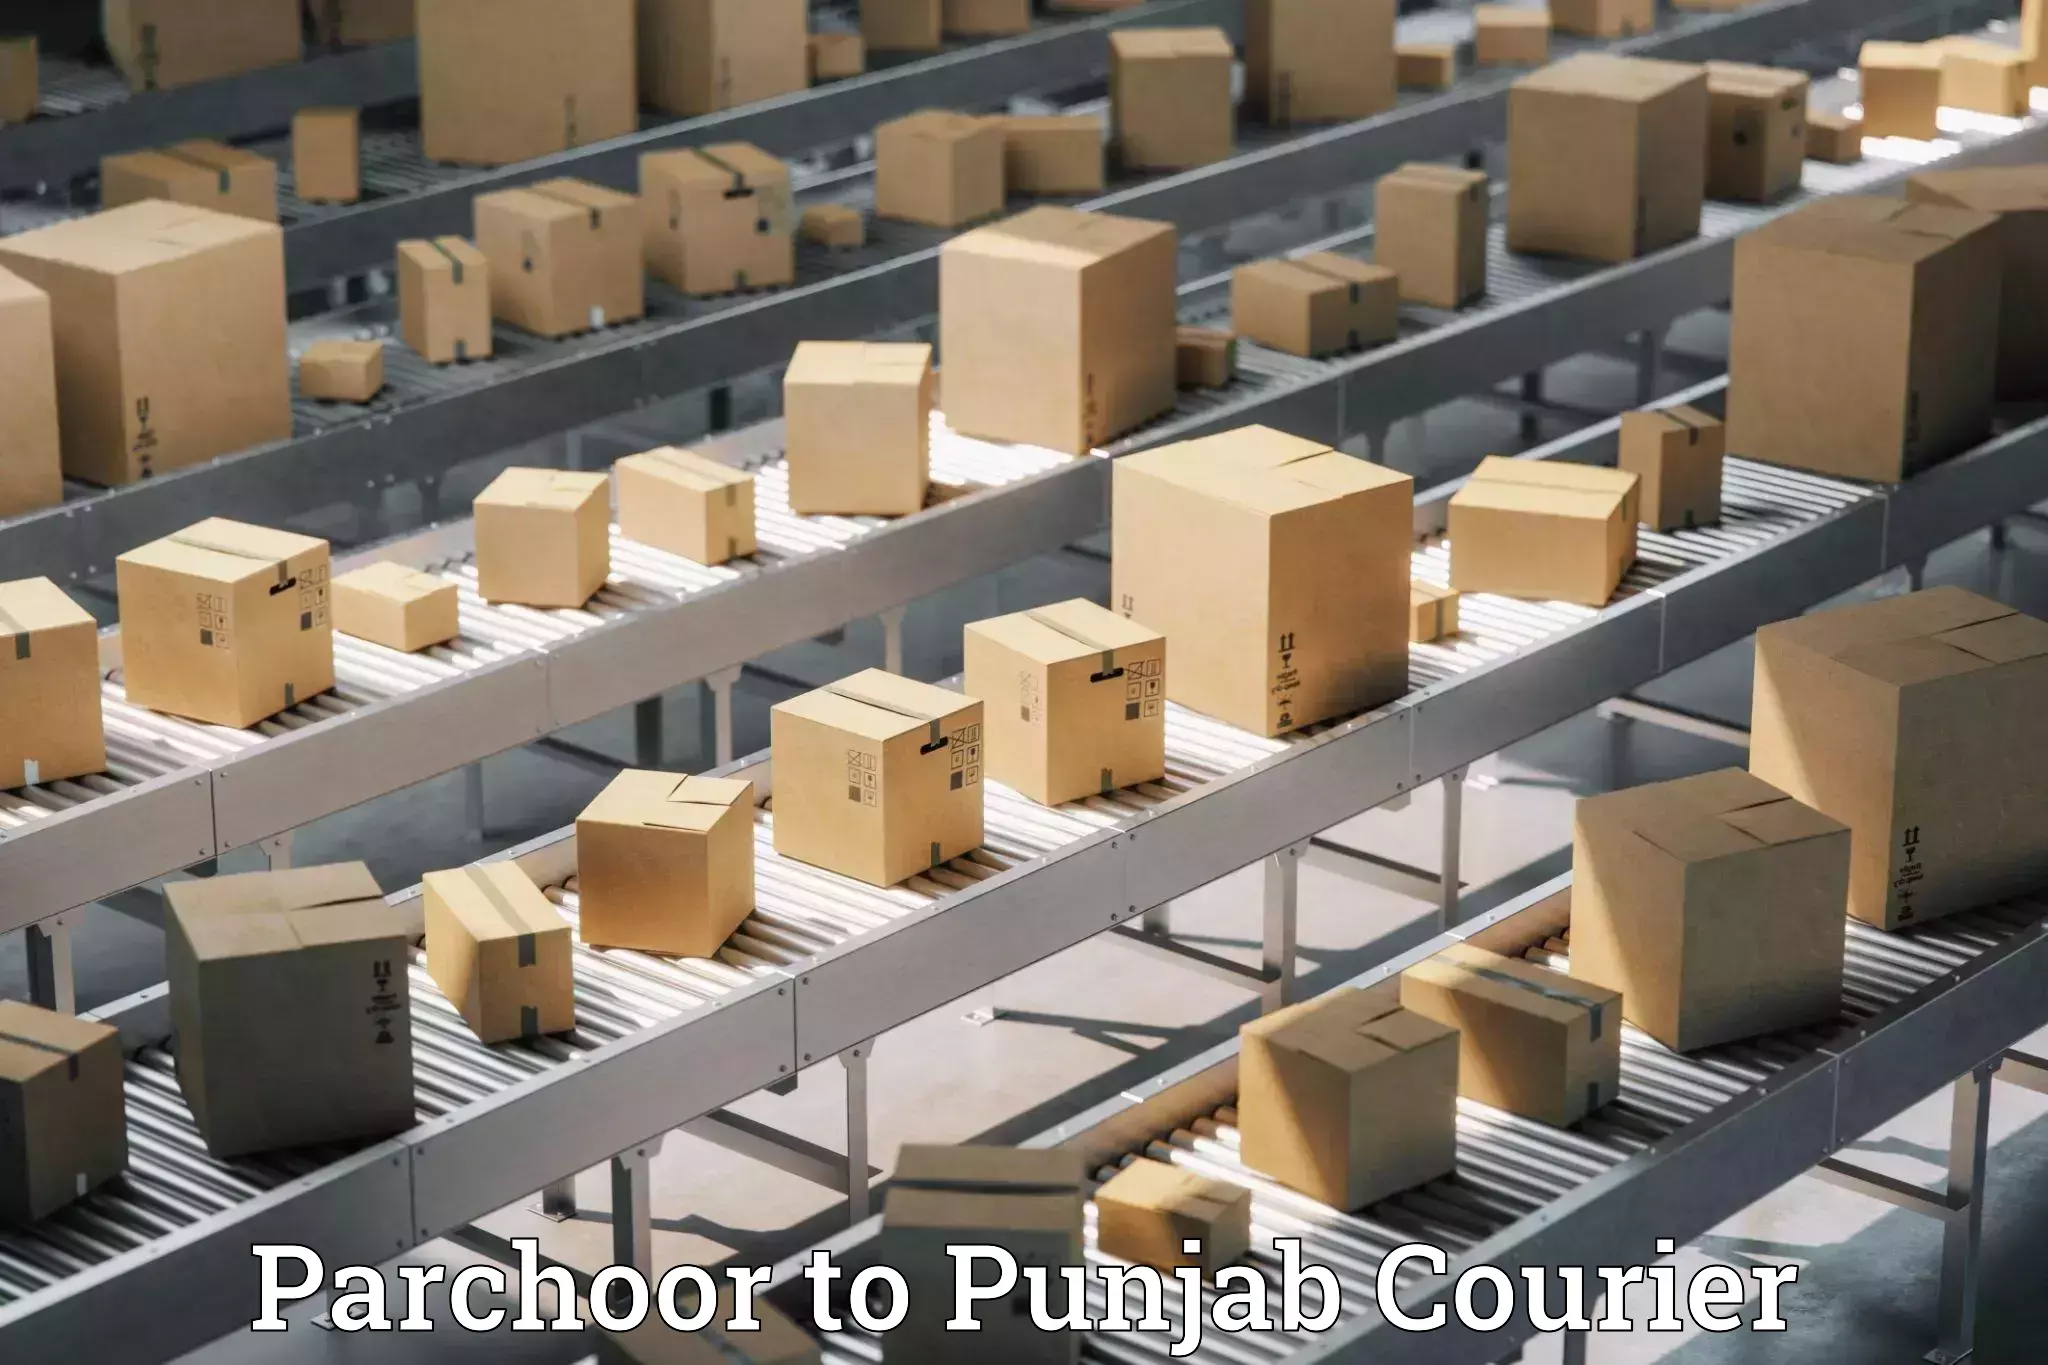 Efficient parcel service Parchoor to Mandi Gobindgarh